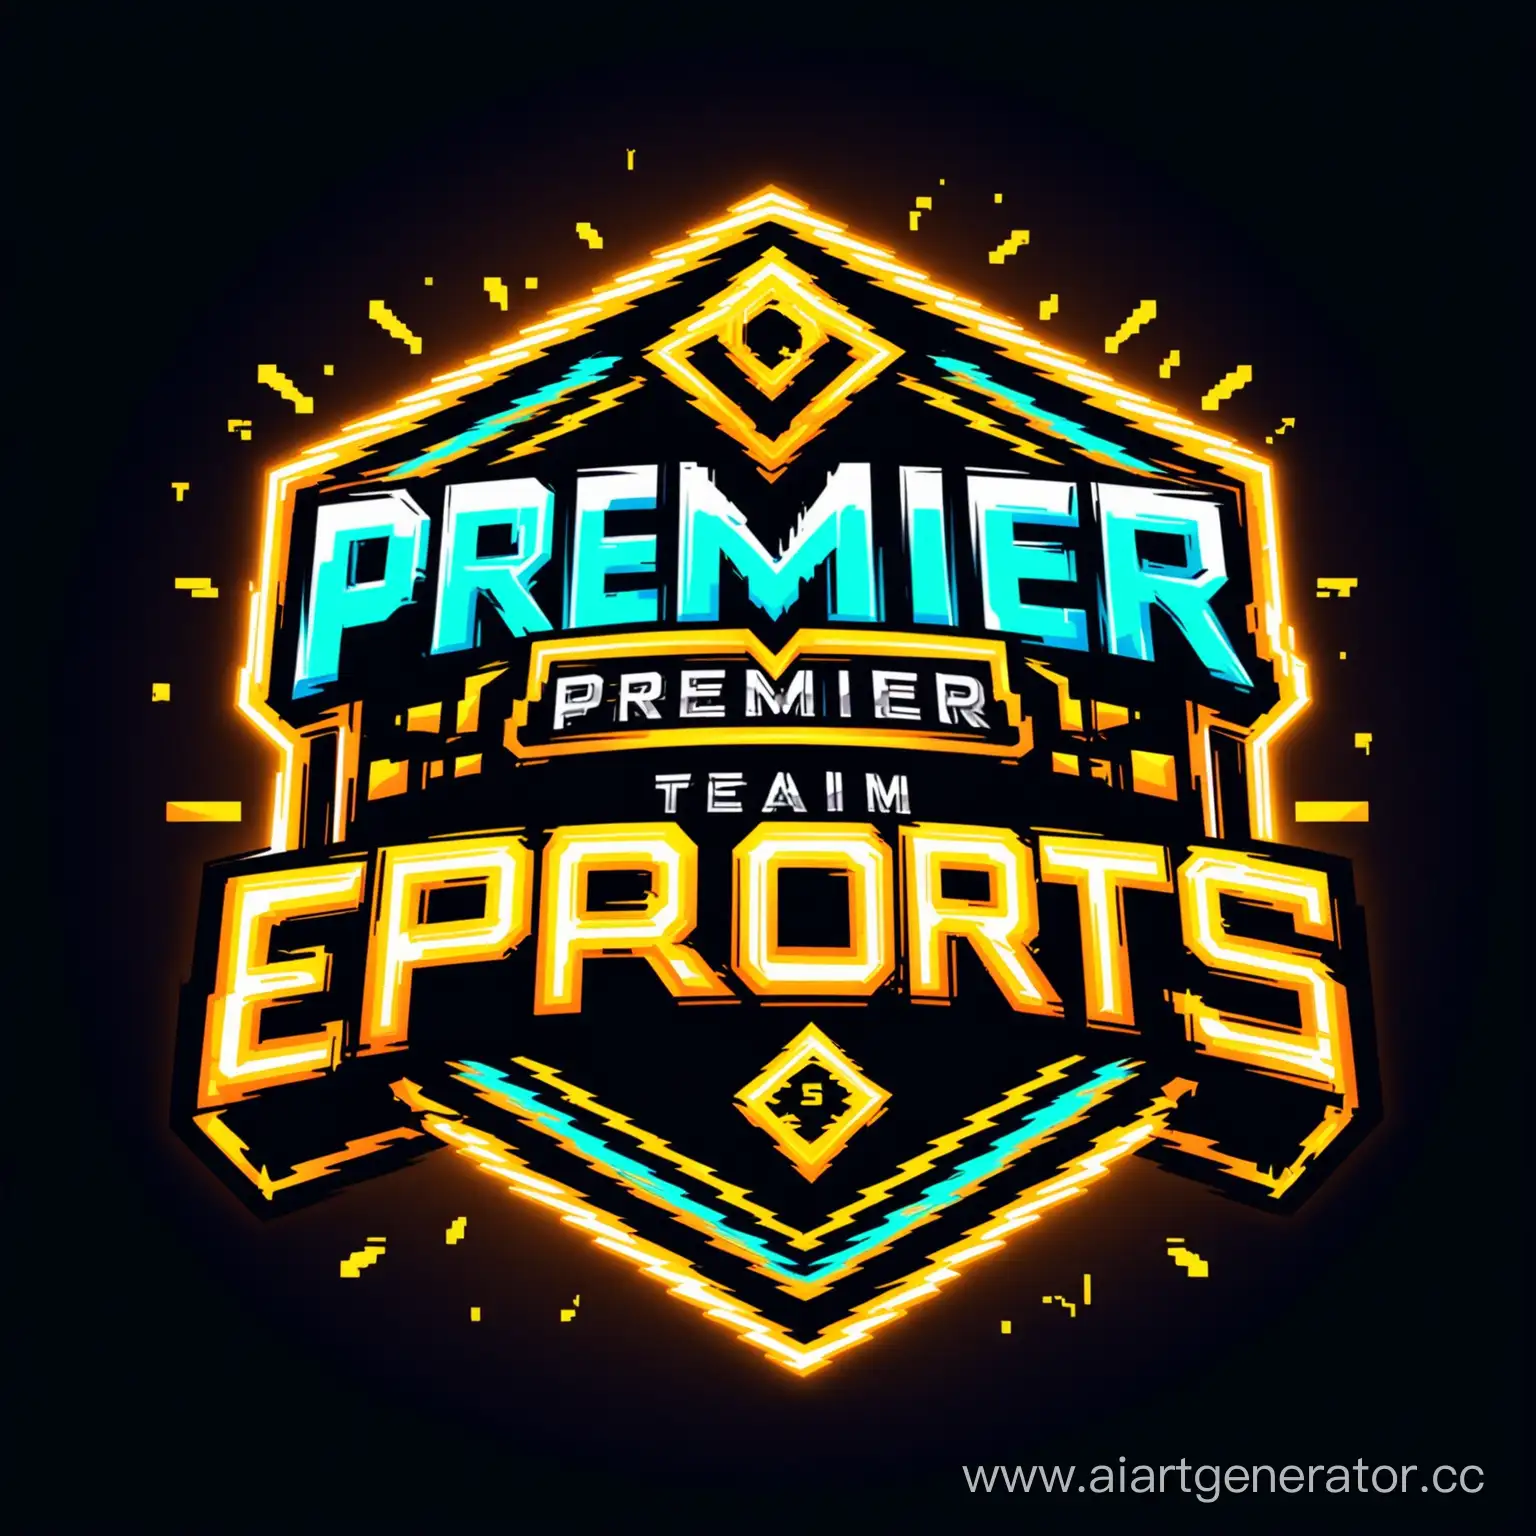 Логотип киберспортивной команды, в ярком неоне, киберспортивный стиль, эмблема команды, анимационный стиль, чтобы был виден текст, название команды: "PREMIER", 4k